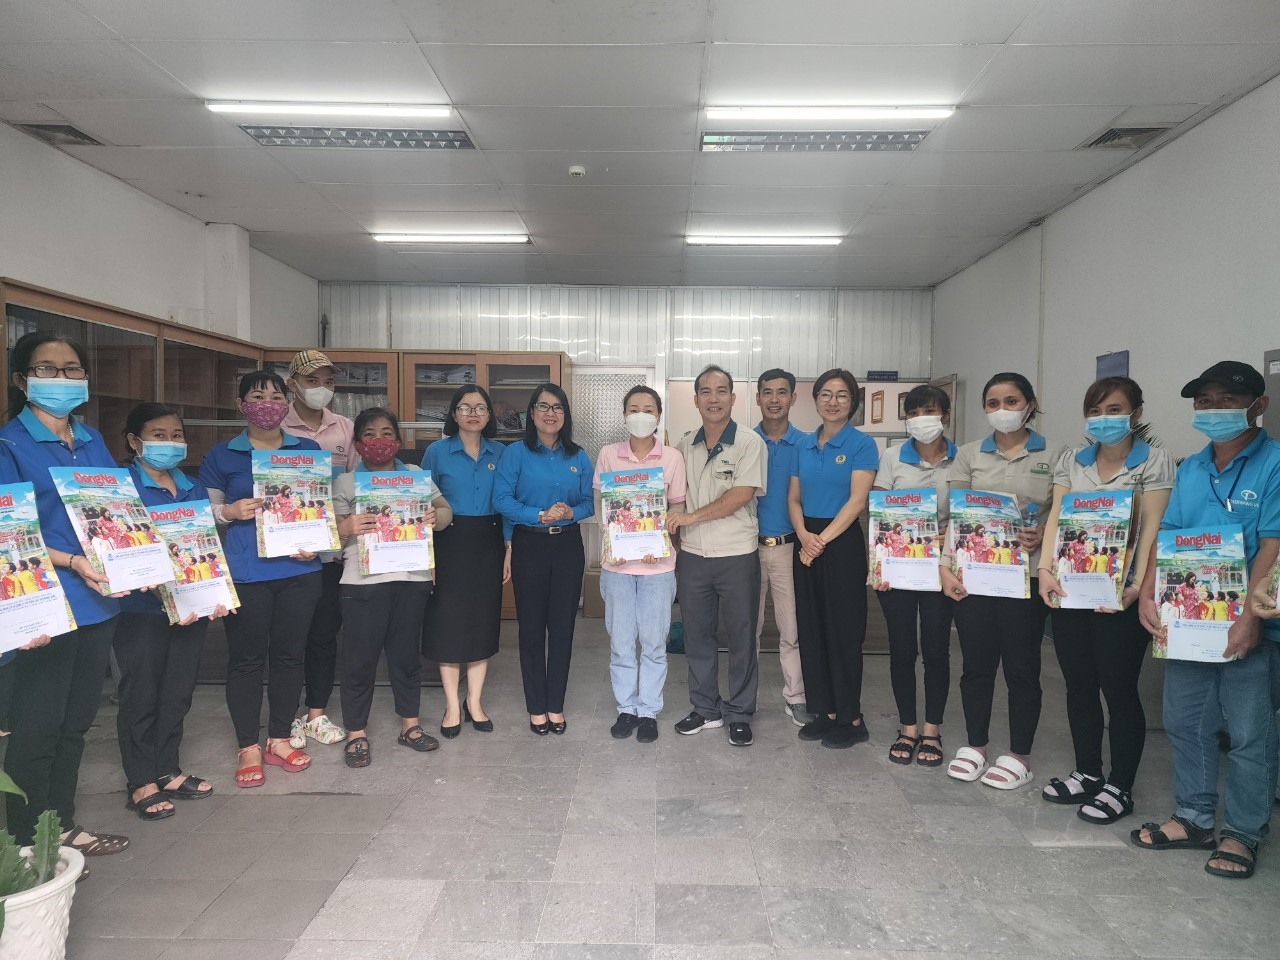 Chủ tịch LĐLĐ tỉnh Đồng Nai Nguyễn Thị Như Ý cũng trực tiếp tới nhà máy tặng quà cho đoàn viên người lao động Công ty Cổ phần TKG Taekwang Vina, chuyên gia công giày với 35.000 lao động tại Khu công nghiệp Biên Hoà 2, TP Biên Hoà.